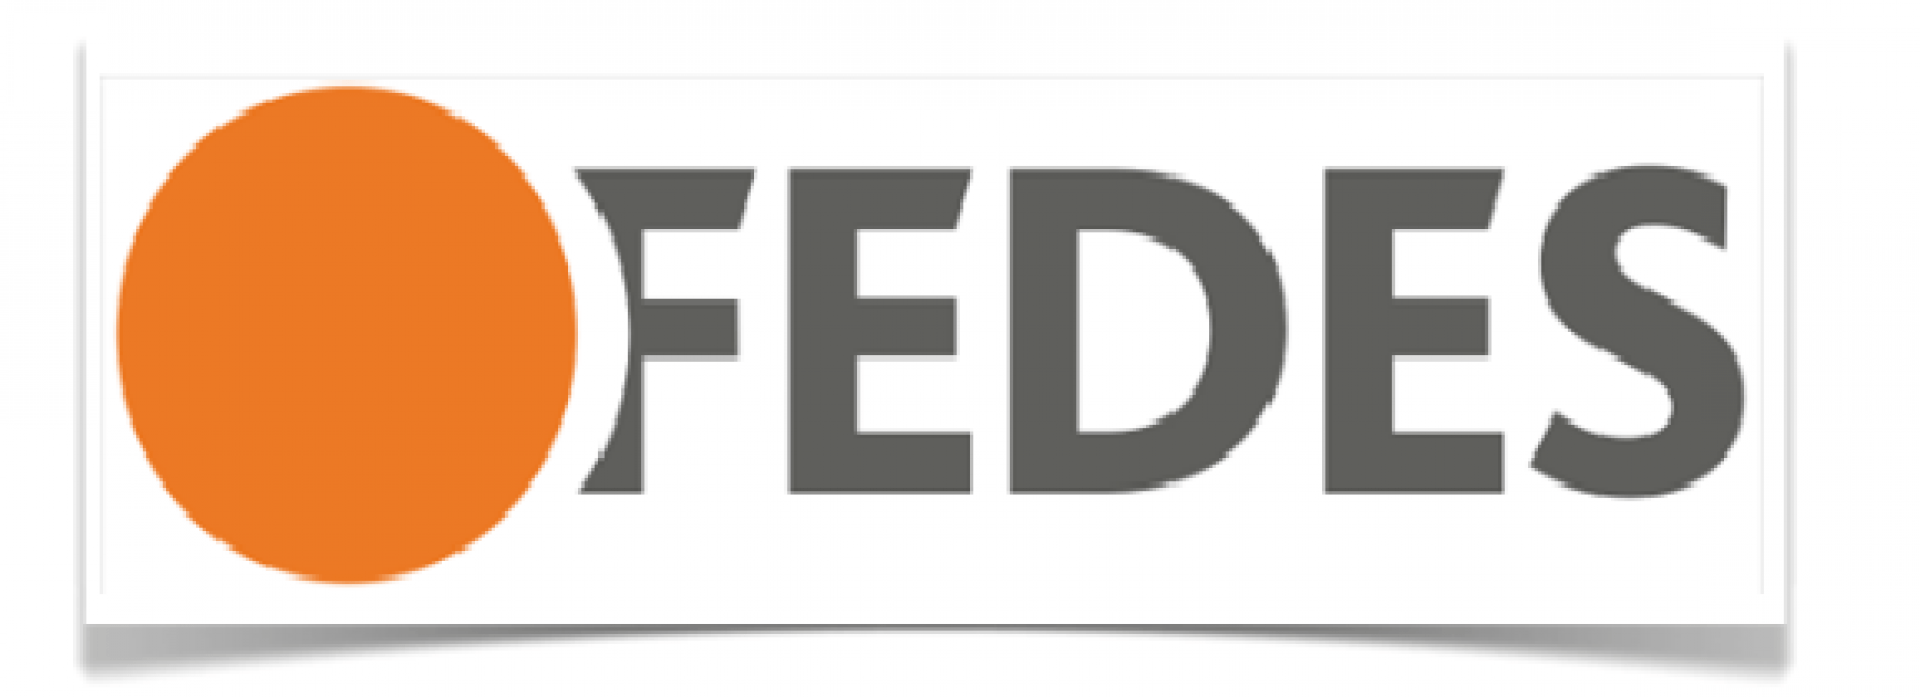 Fede's Logo - Inicioón Fedes